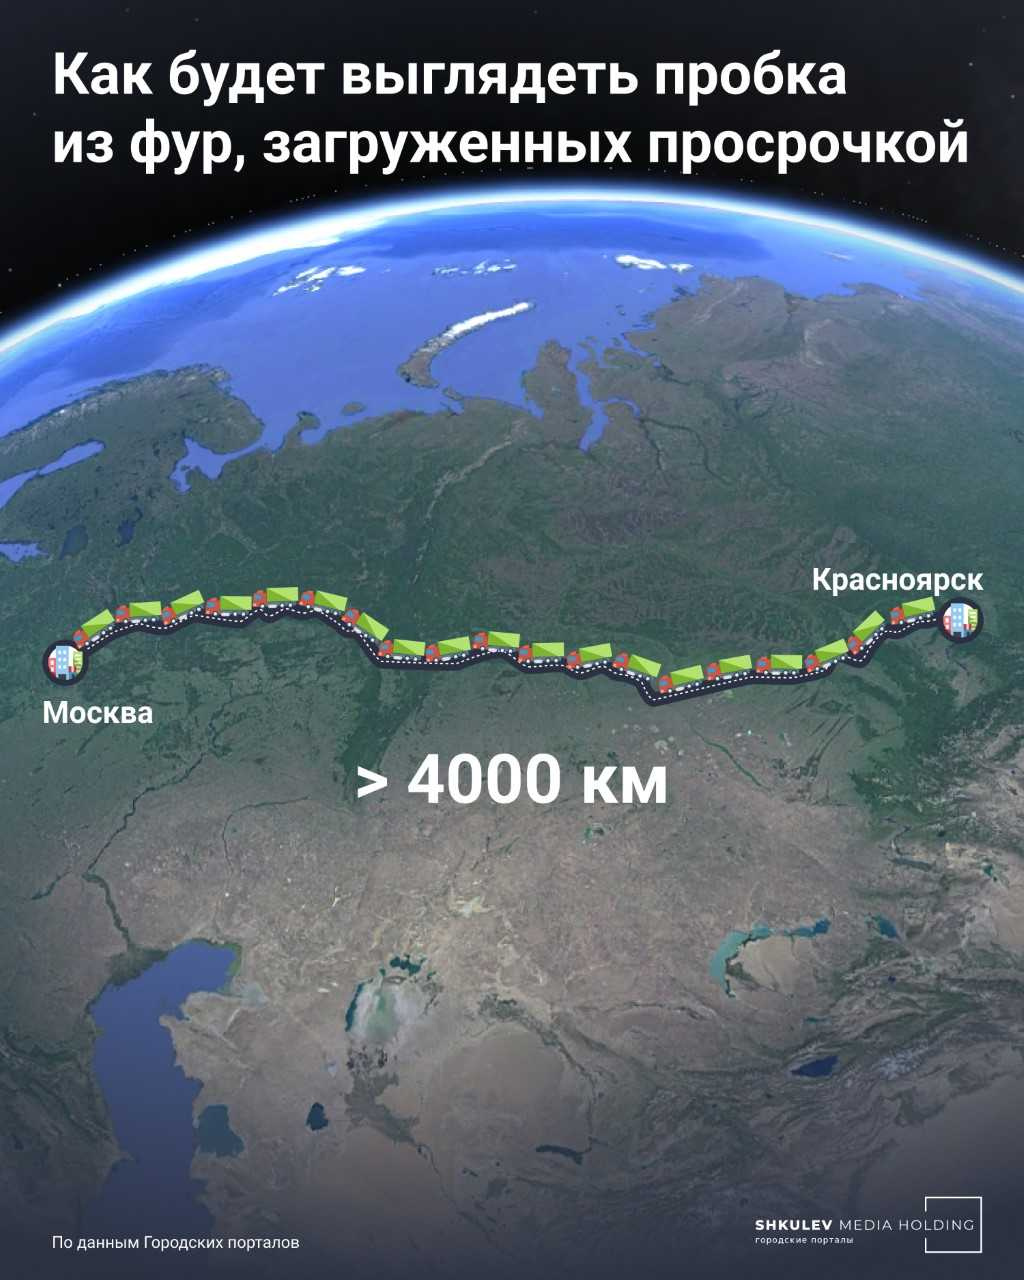 Из еды, которую каждый год выбрасывают в России, можно проложить внушительный маршрут